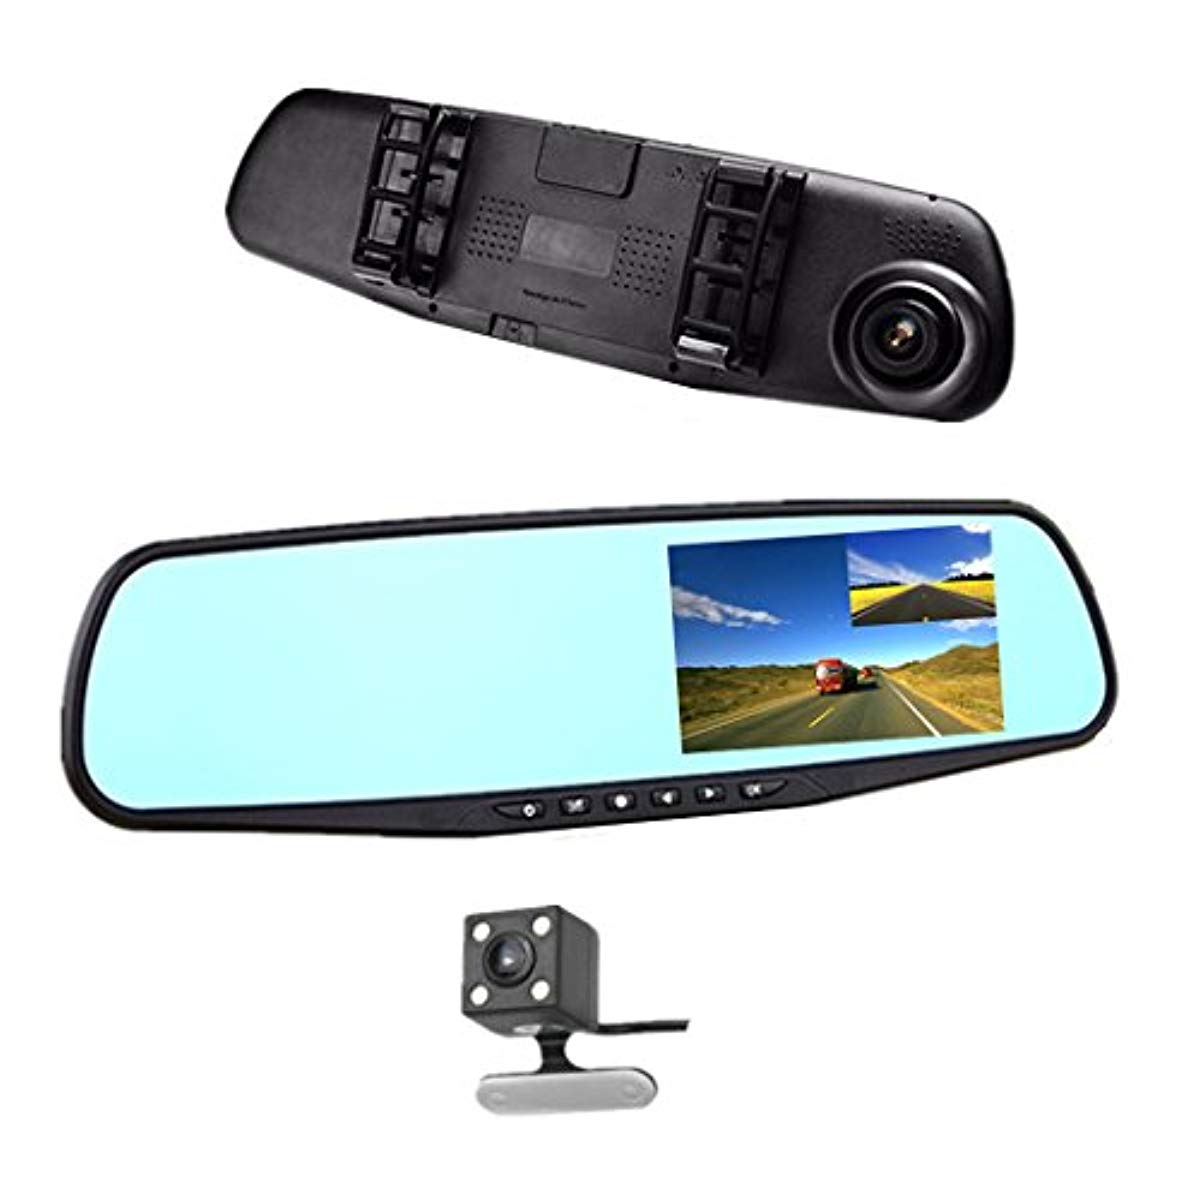 Oglinda auto cu camera fata-spate, rezolutie HD, display 3.5 inch